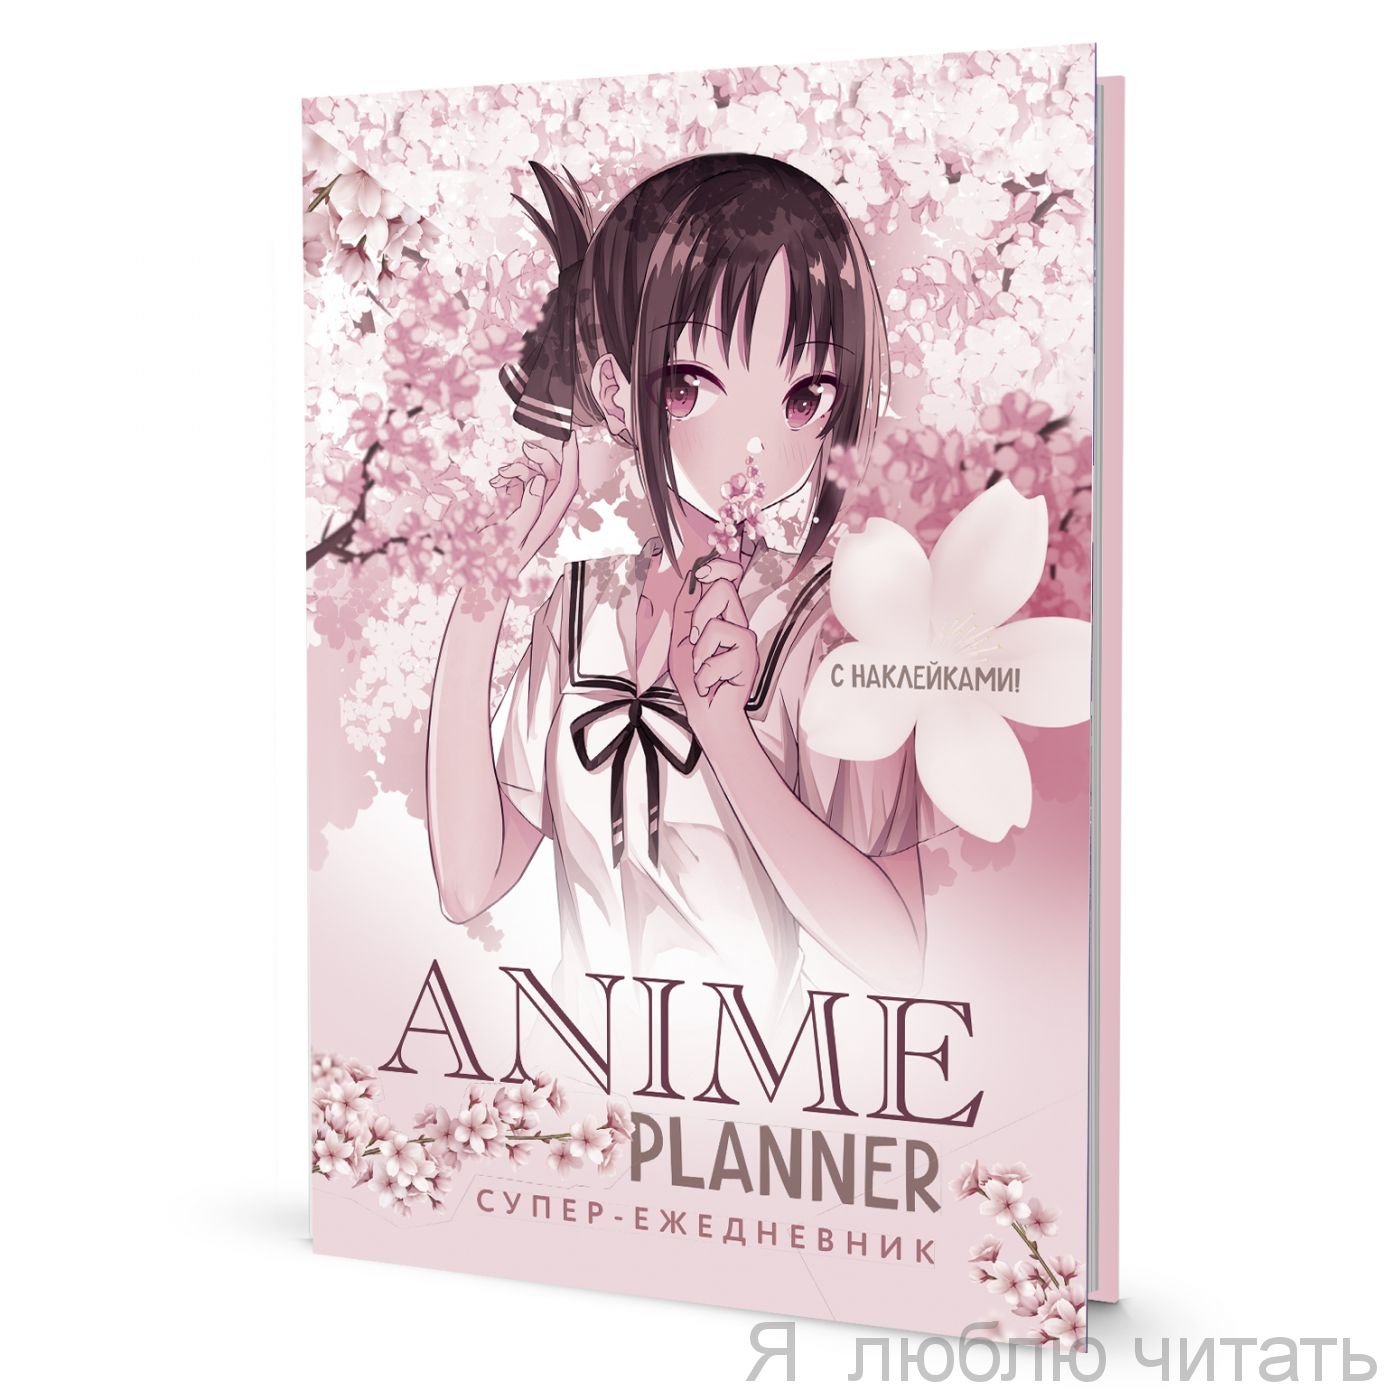 Ежедневник с наклейками Anime Planner девочка в цветах